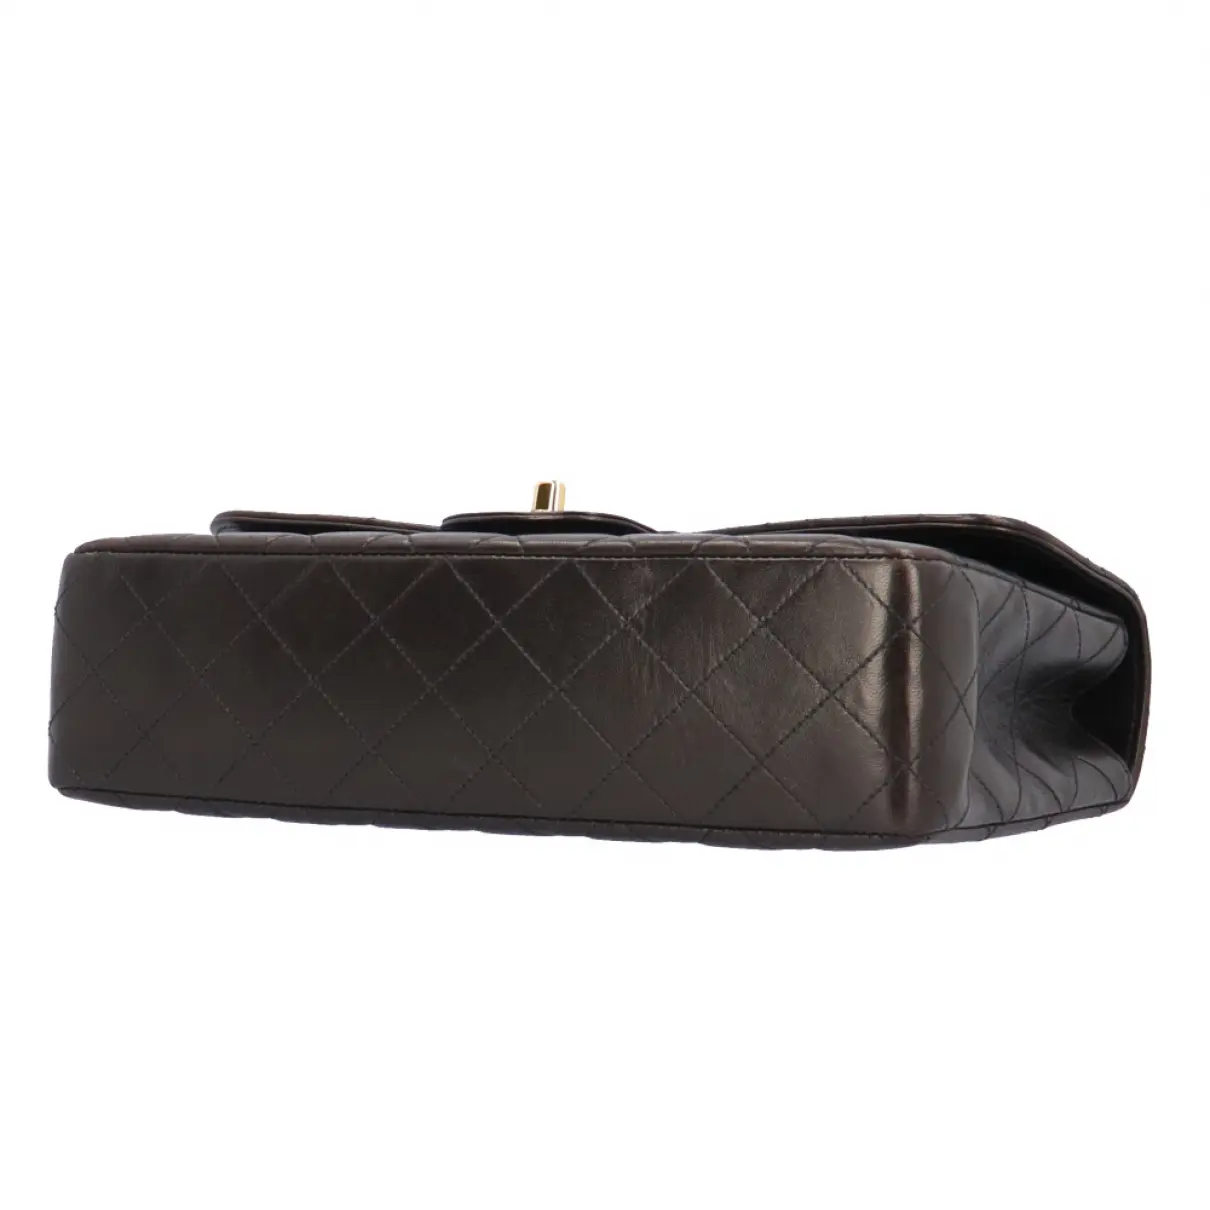 Coco Handle leather handbag Chanel - Vintage